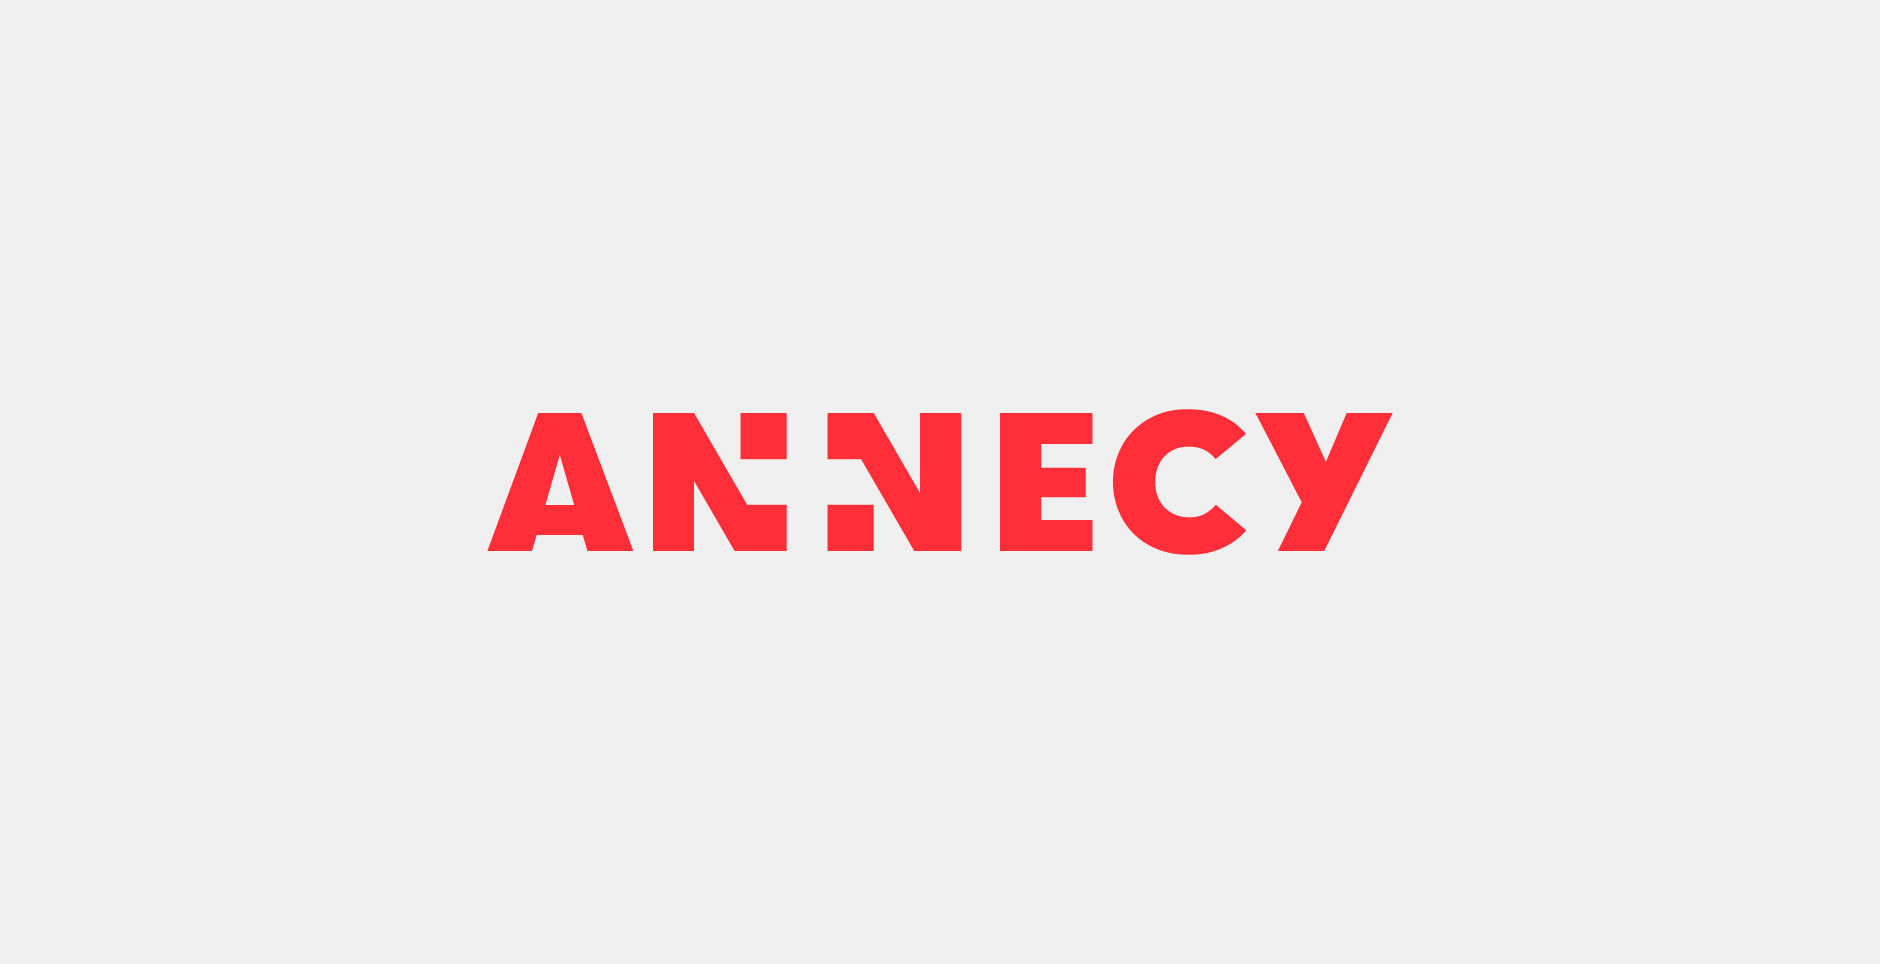 annecy-identite-visuelle2